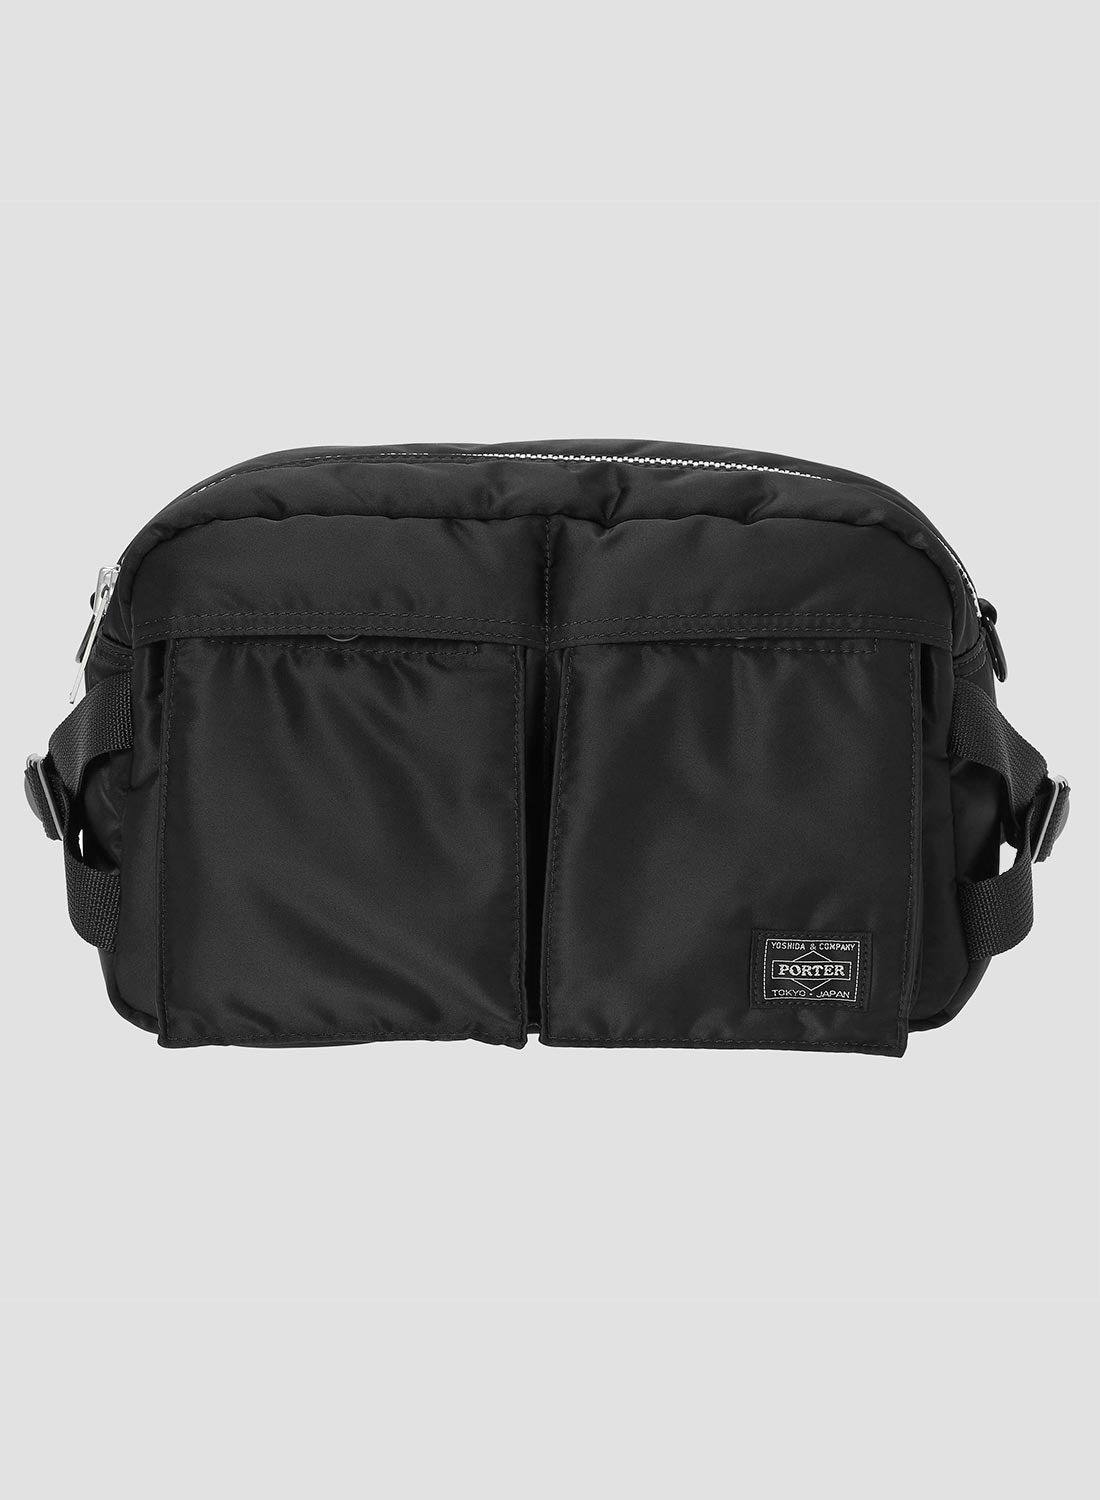 Porter-Yoshida & Co Tanker Waist Bag in Black - 4